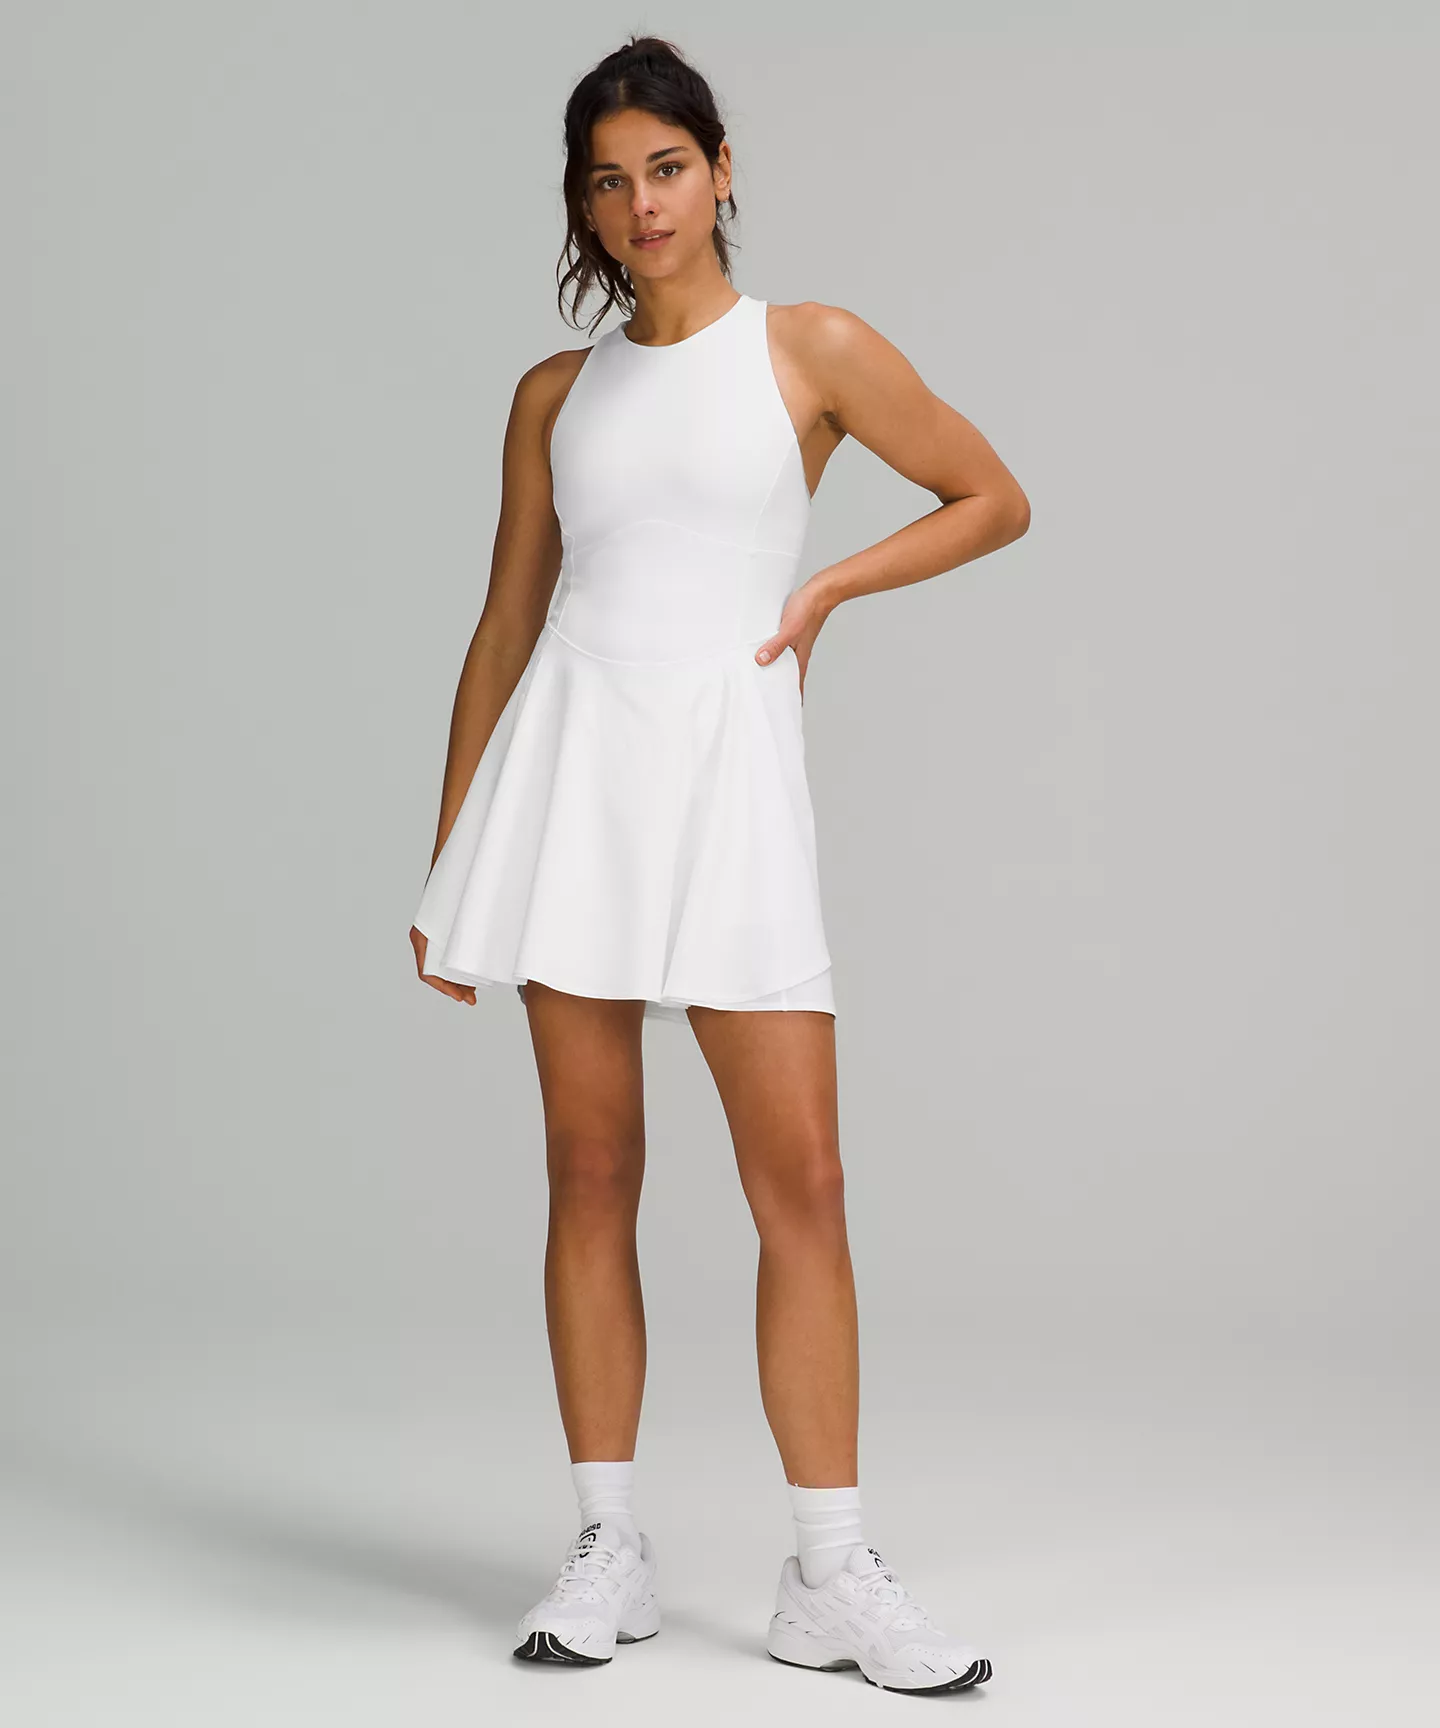 A person wearing a lululemon tennis dress